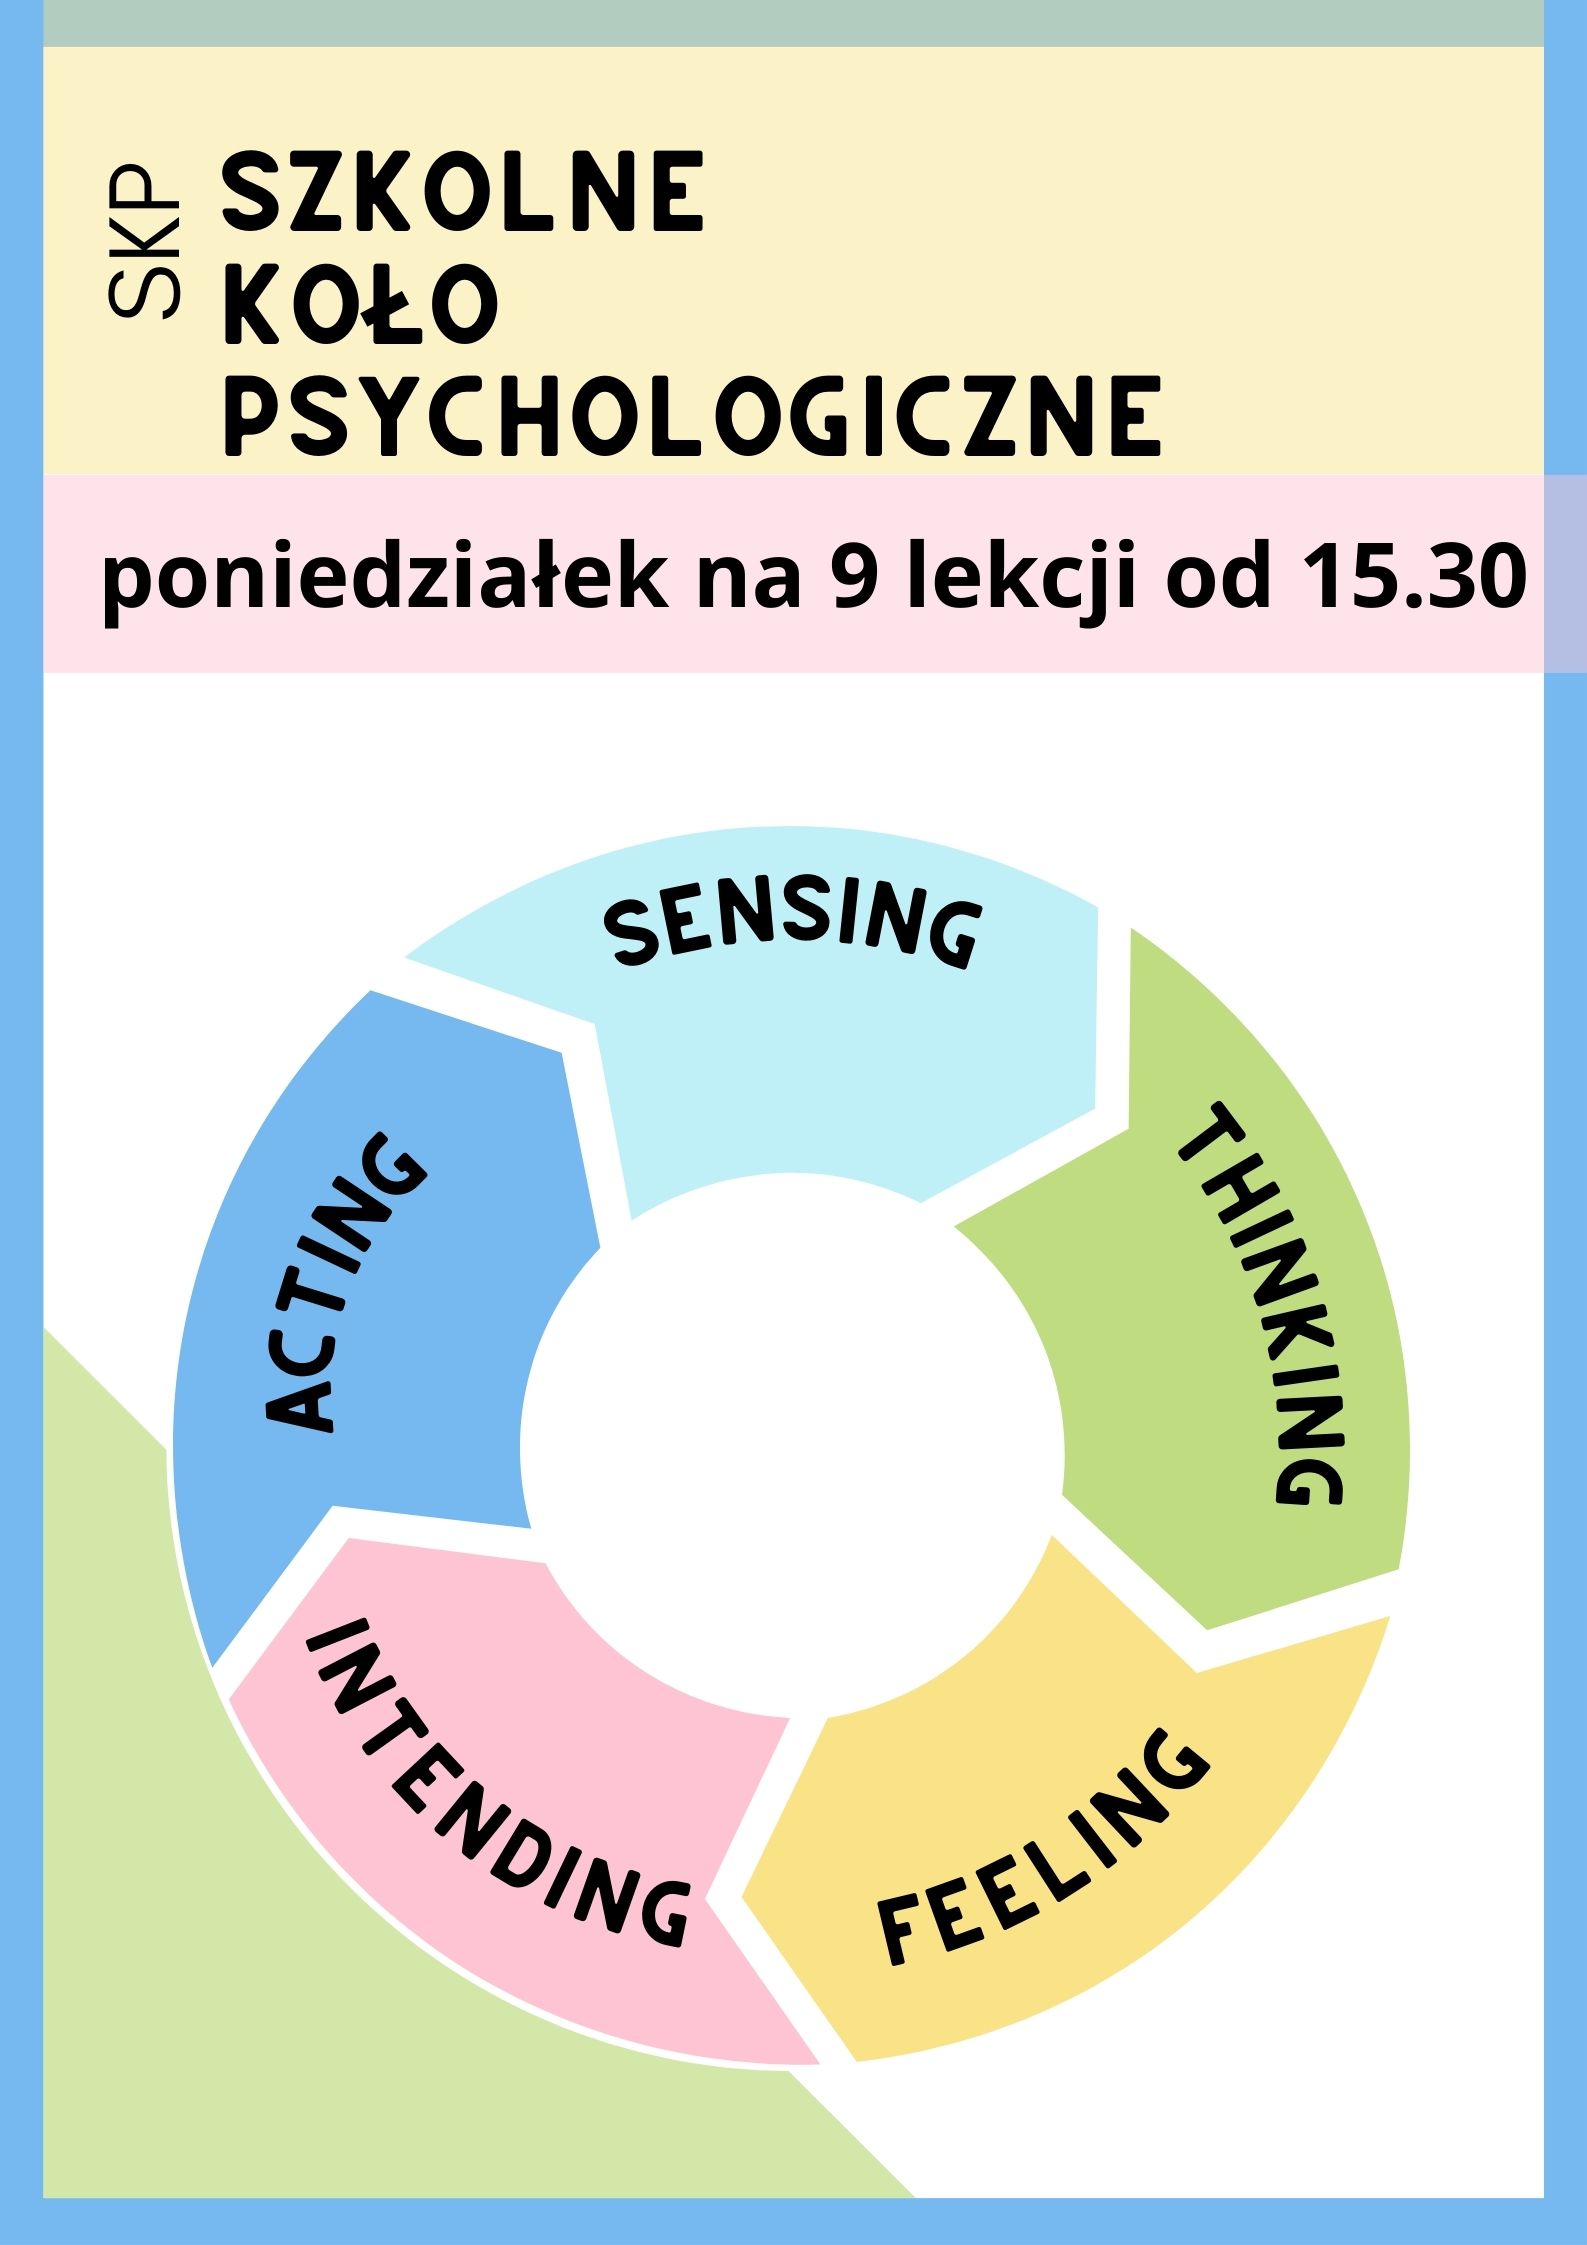 You are currently viewing Szkolne Koło Psychologiczne SKP